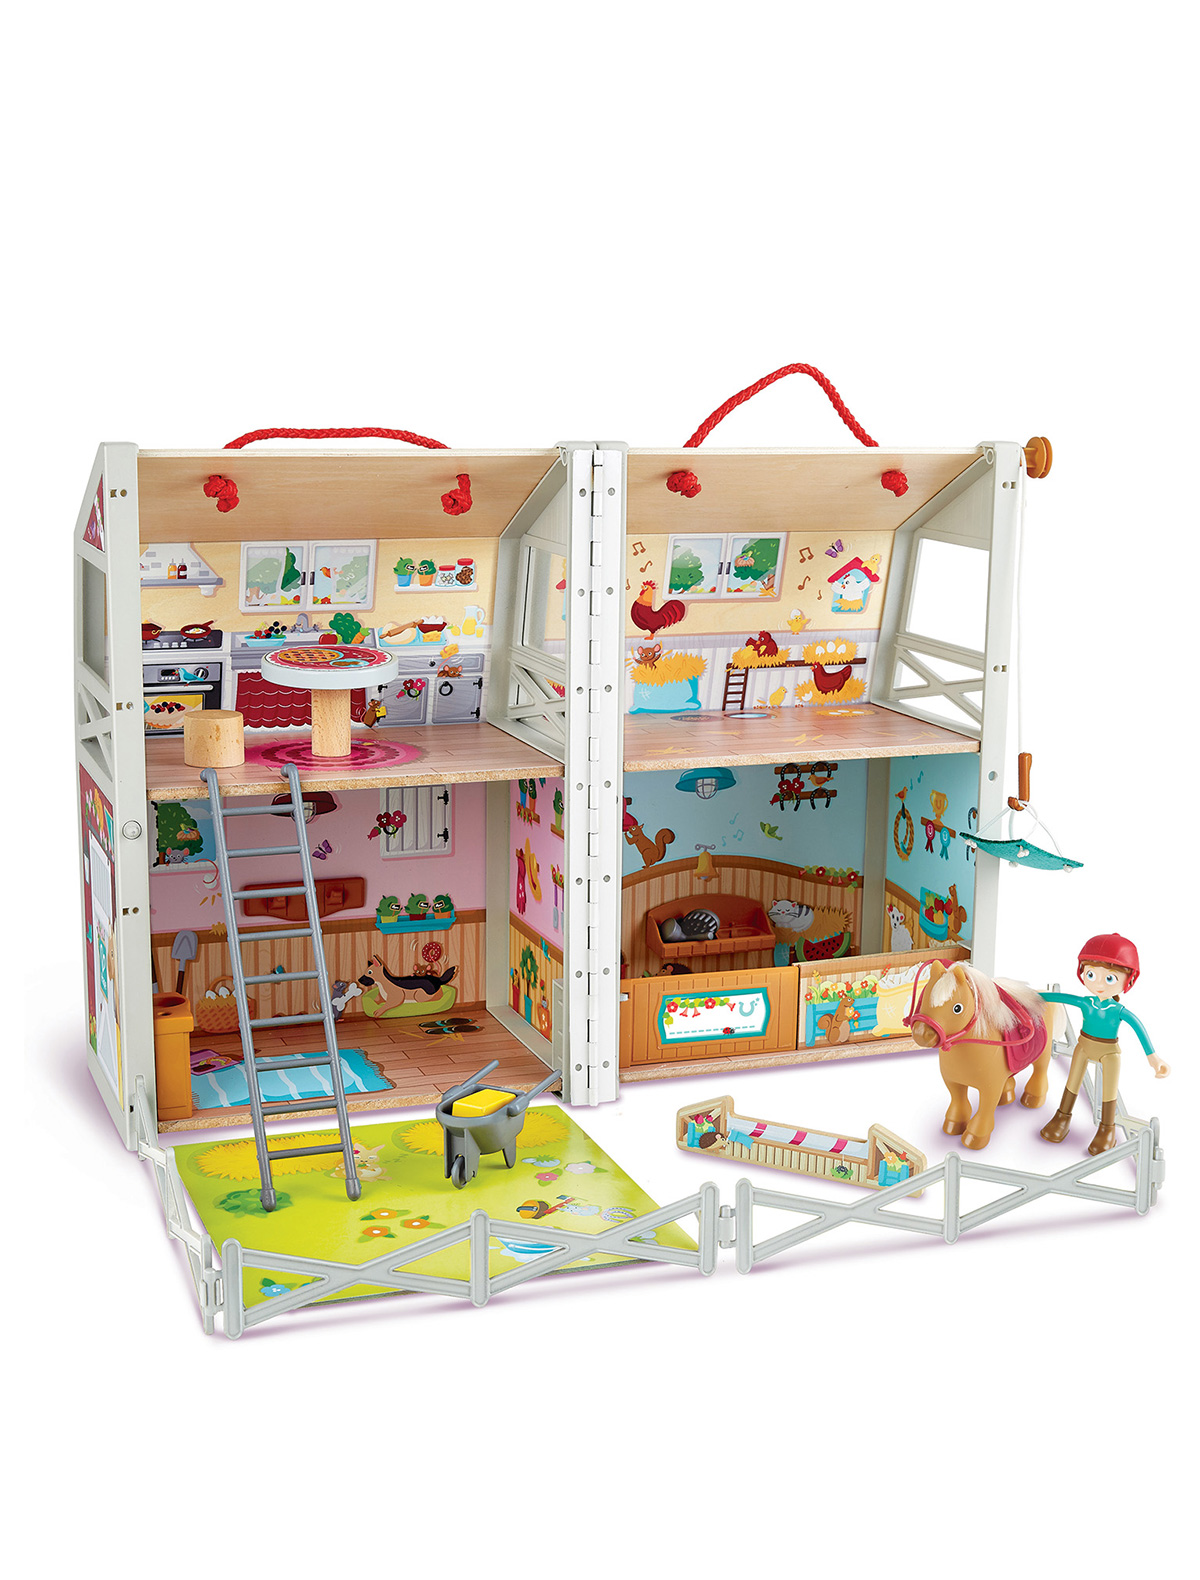 Игрушка Hape кукольный домик конструктор для девочек с мебелью куклой 2 этажа 4 комнаты 370000009